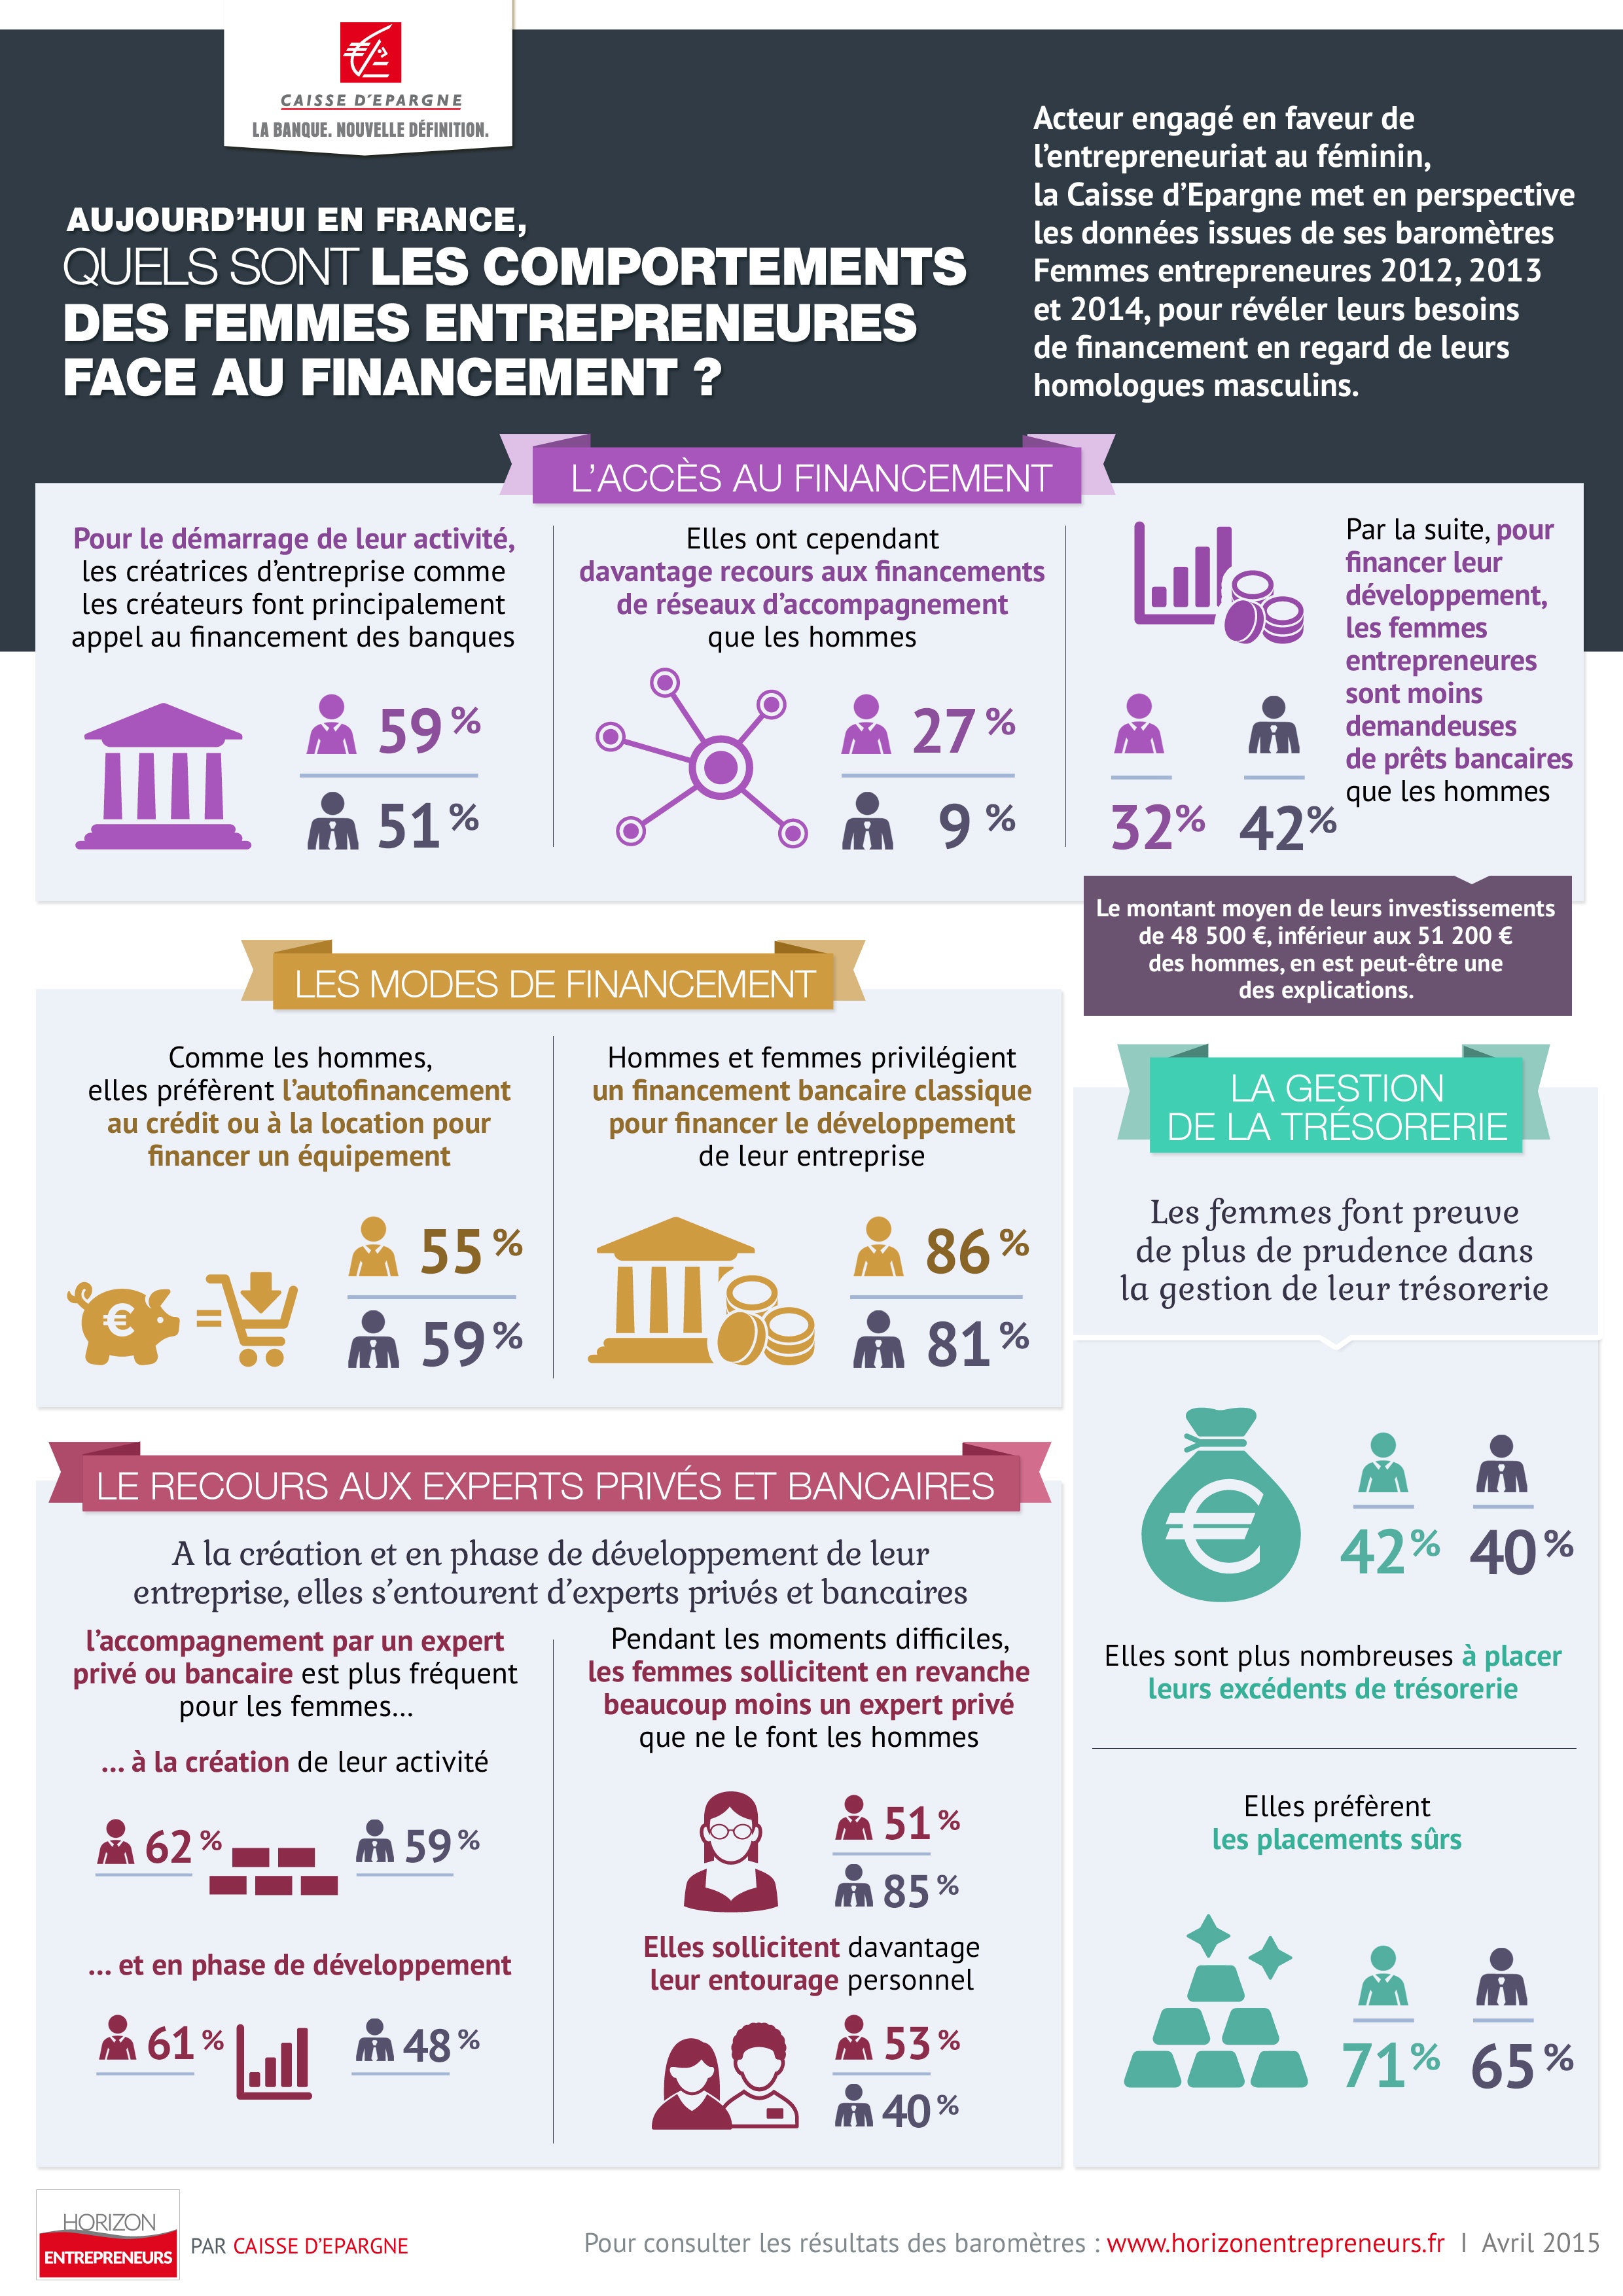 Infographie Caisse d'Epargne femmes et financement